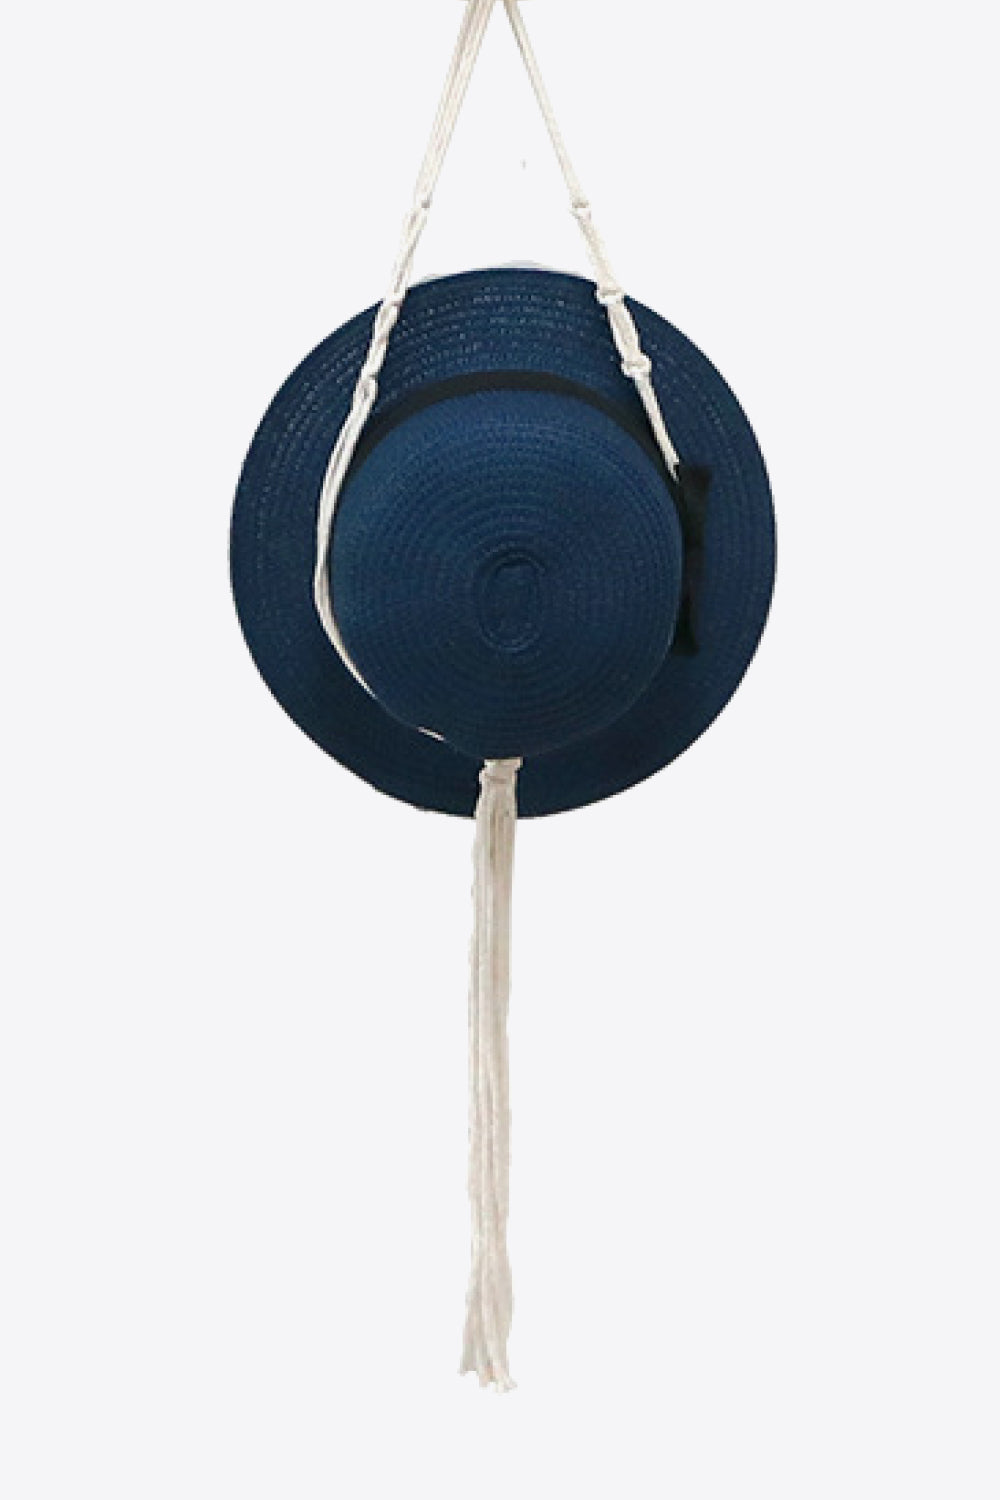 Macrame Hat Hanger - AllIn Computer